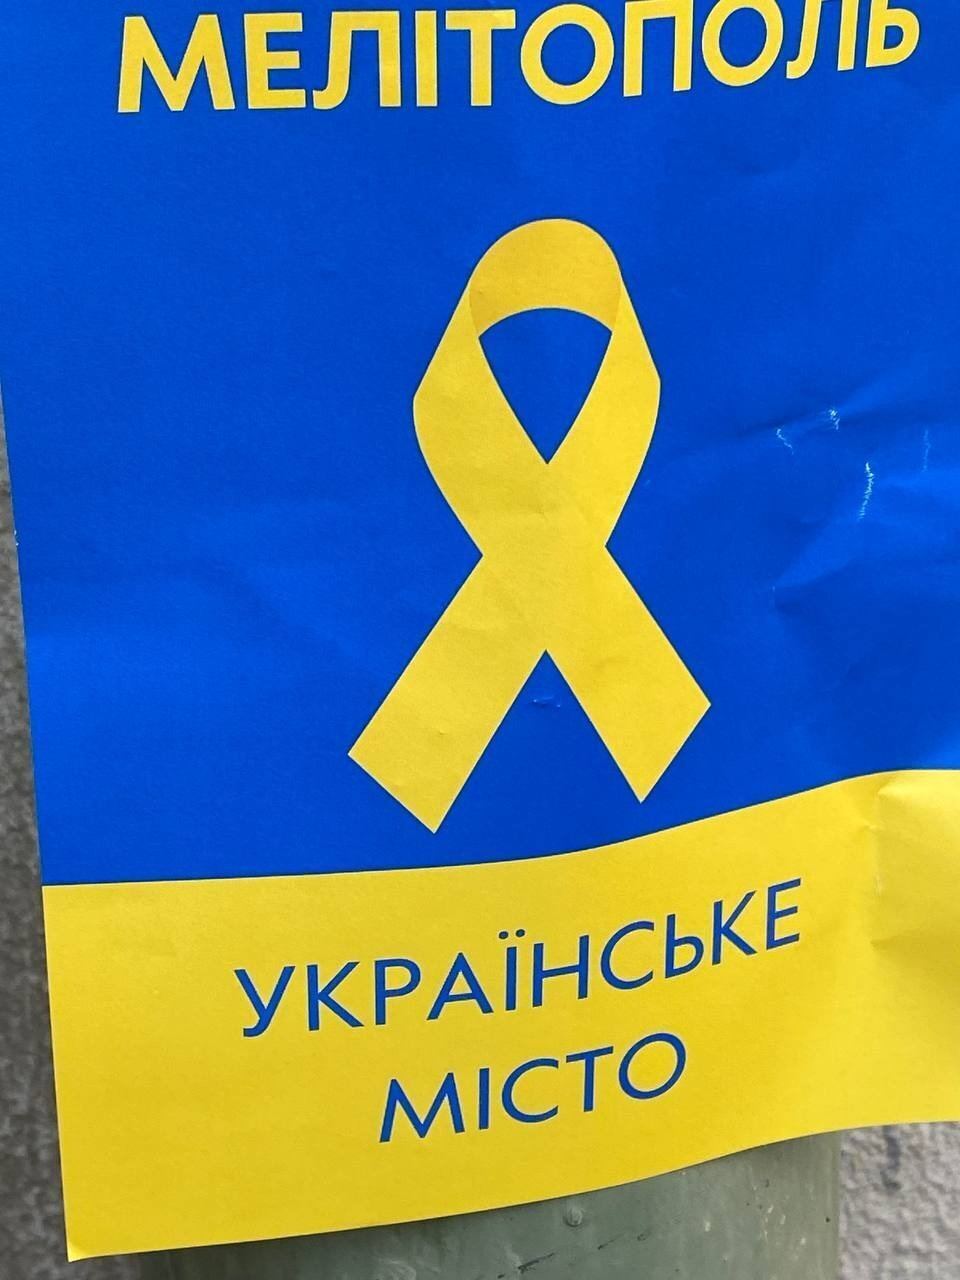 Мелитополь – это Украина